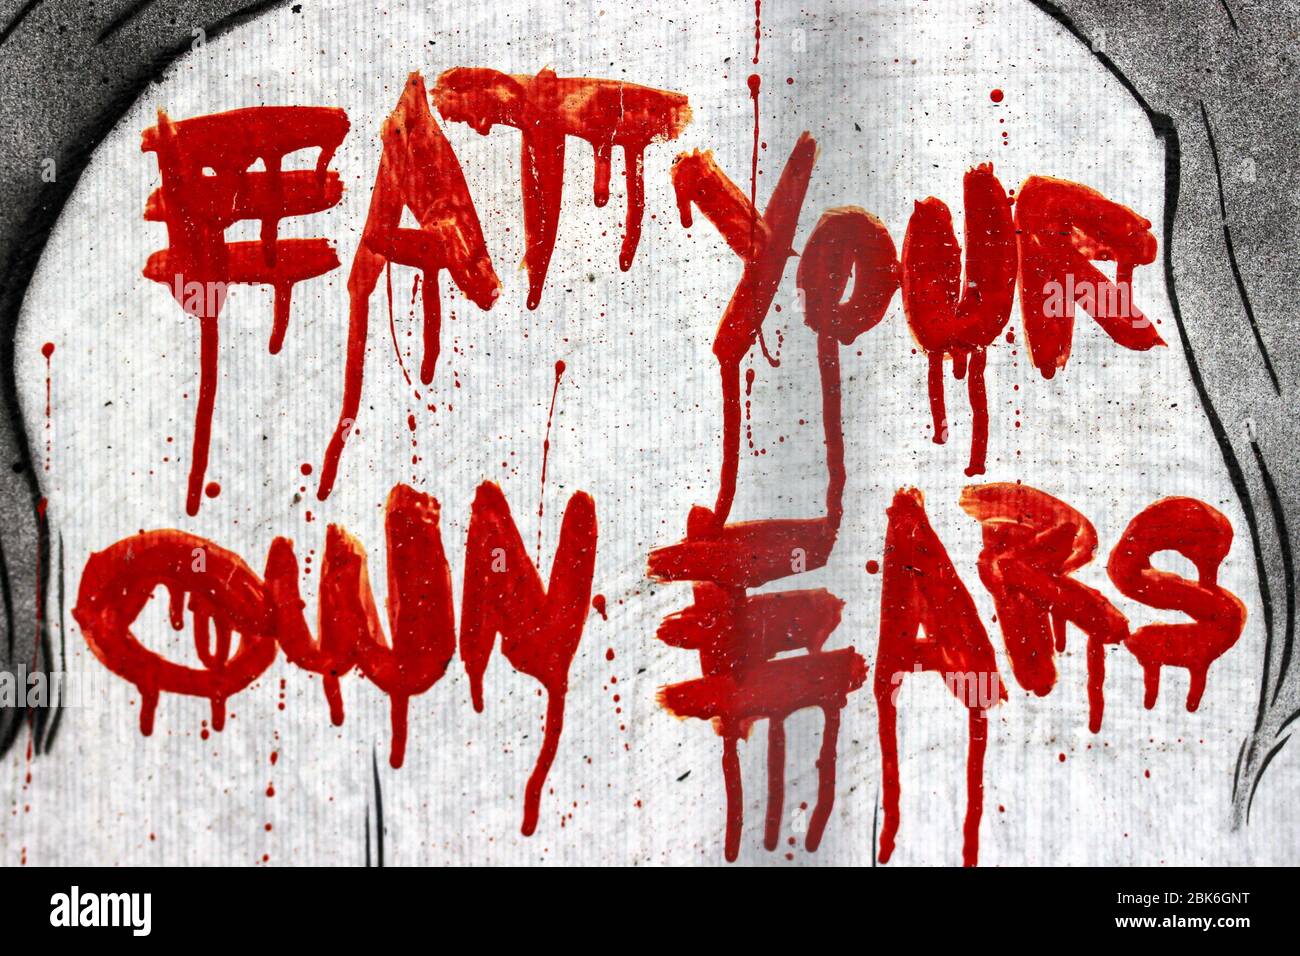 Mangia le tue orecchie - scritto con vernice rossa sul muro ad Amsterdam, Olanda Foto Stock